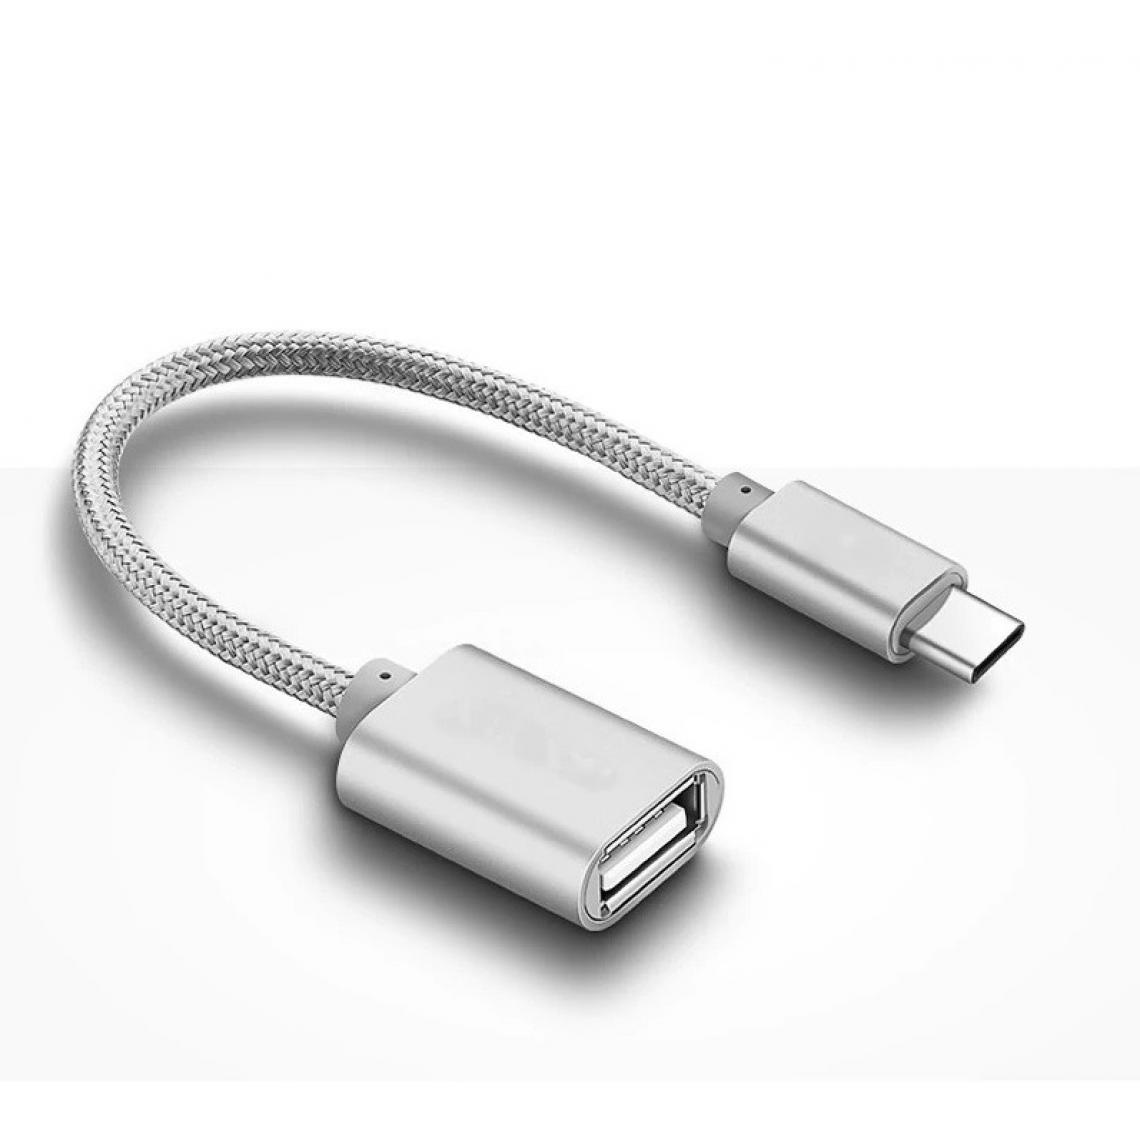 Shot - Adaptateur Type C/USB pour SAMSUNG Galaxy Book Smartphone & MAC USB-C Clef (ARGENT) - Autres accessoires smartphone